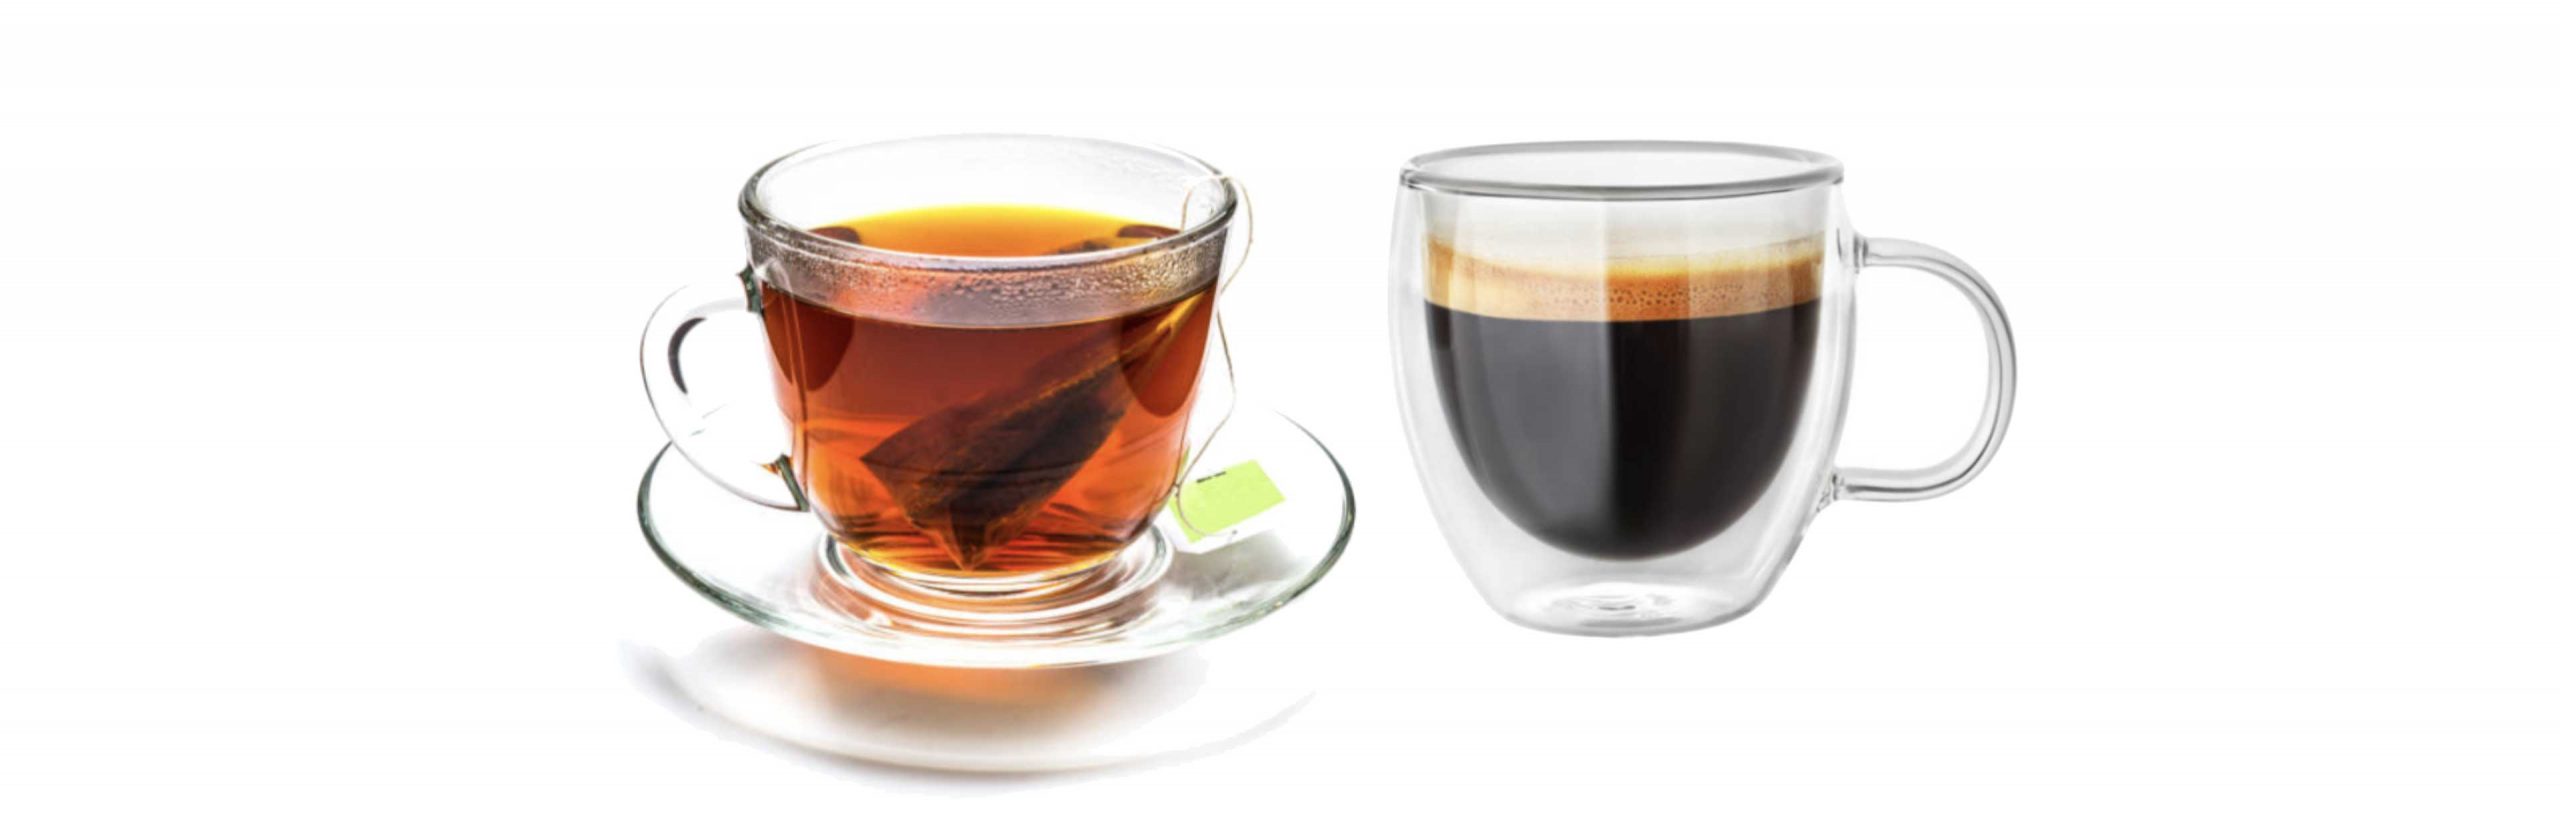 Wat is het verschil tussen cafeïne en theïne?